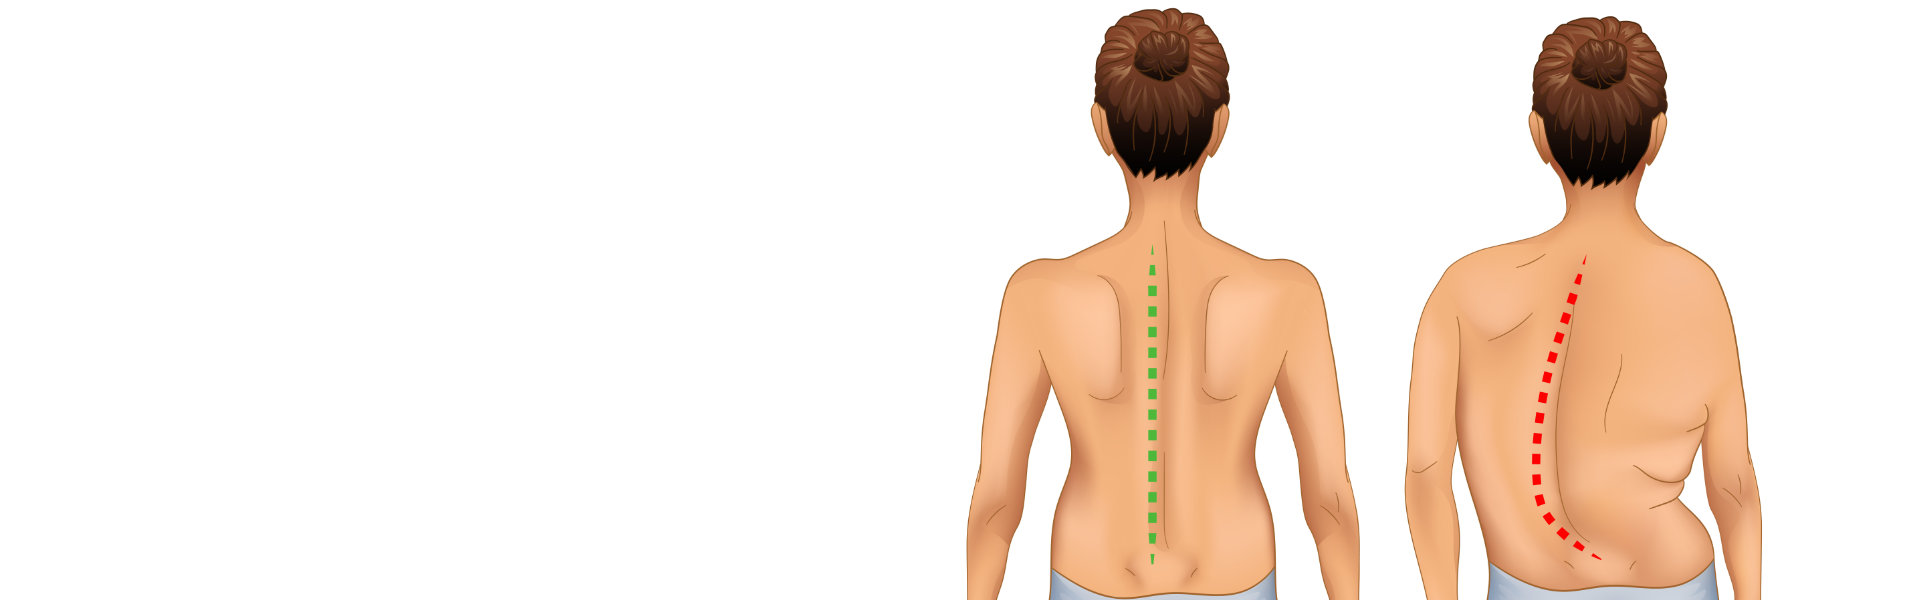 spine scoliosis treatment in dubai